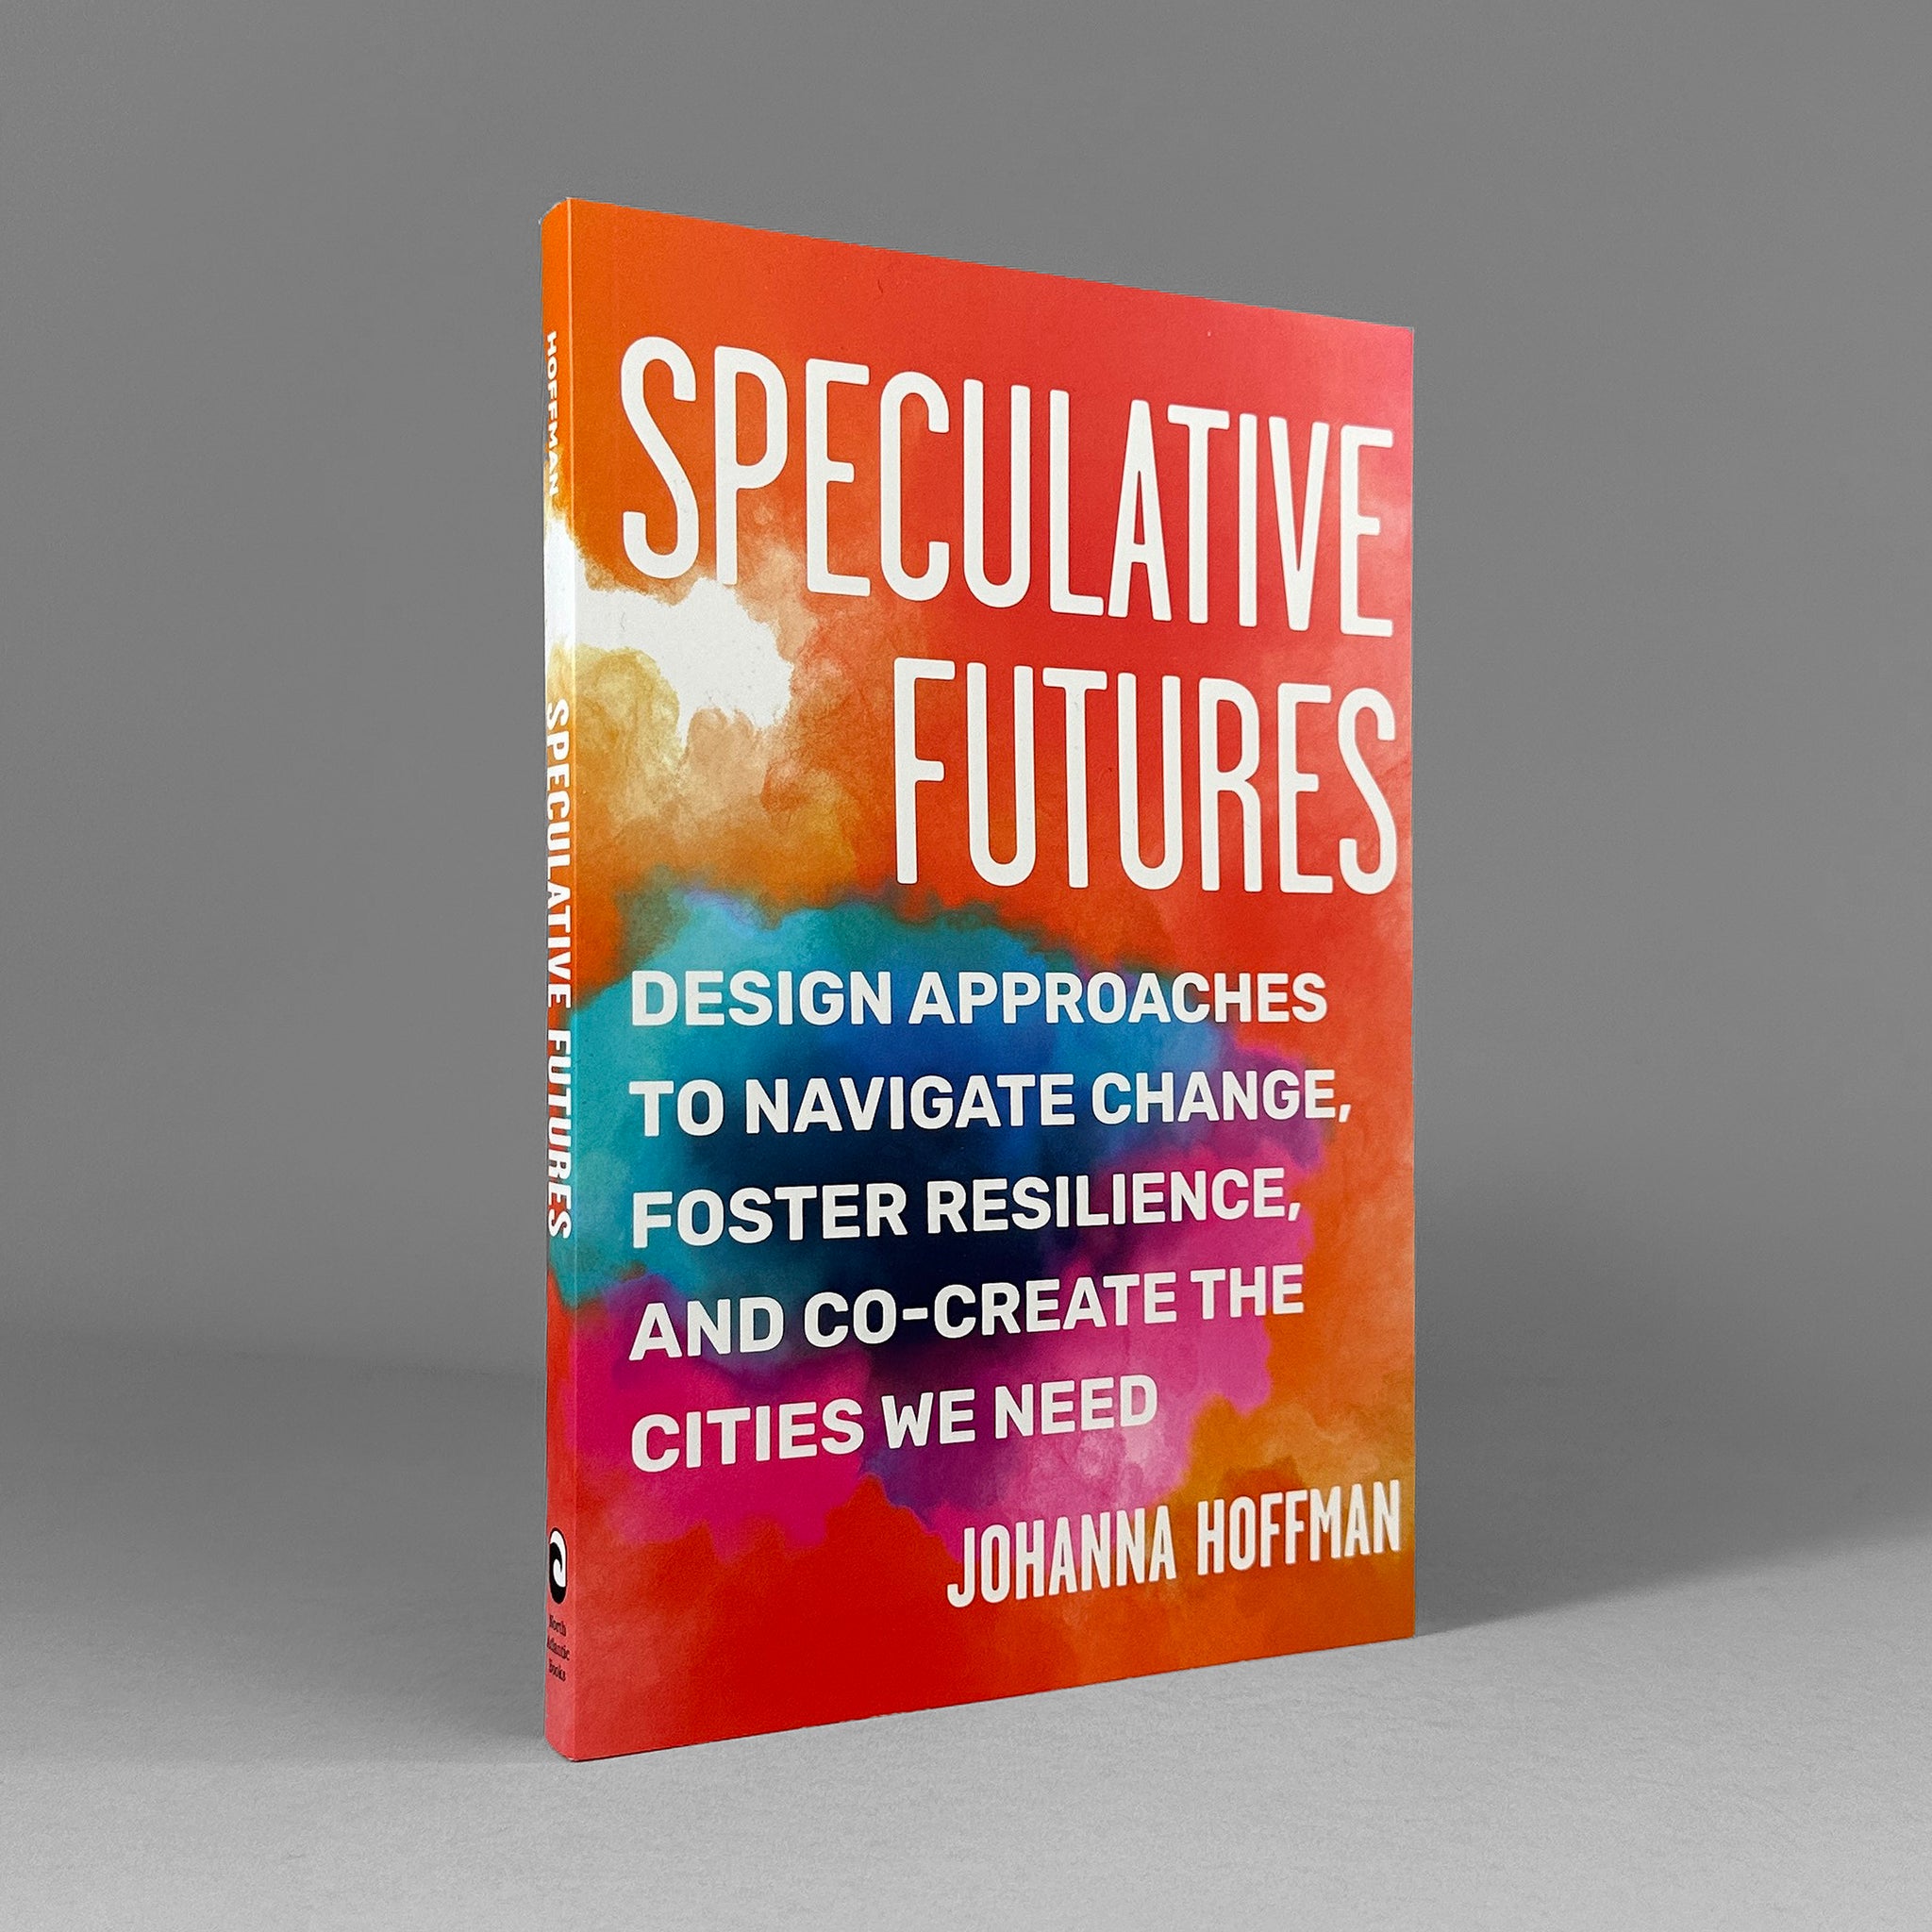 Speculative Futures